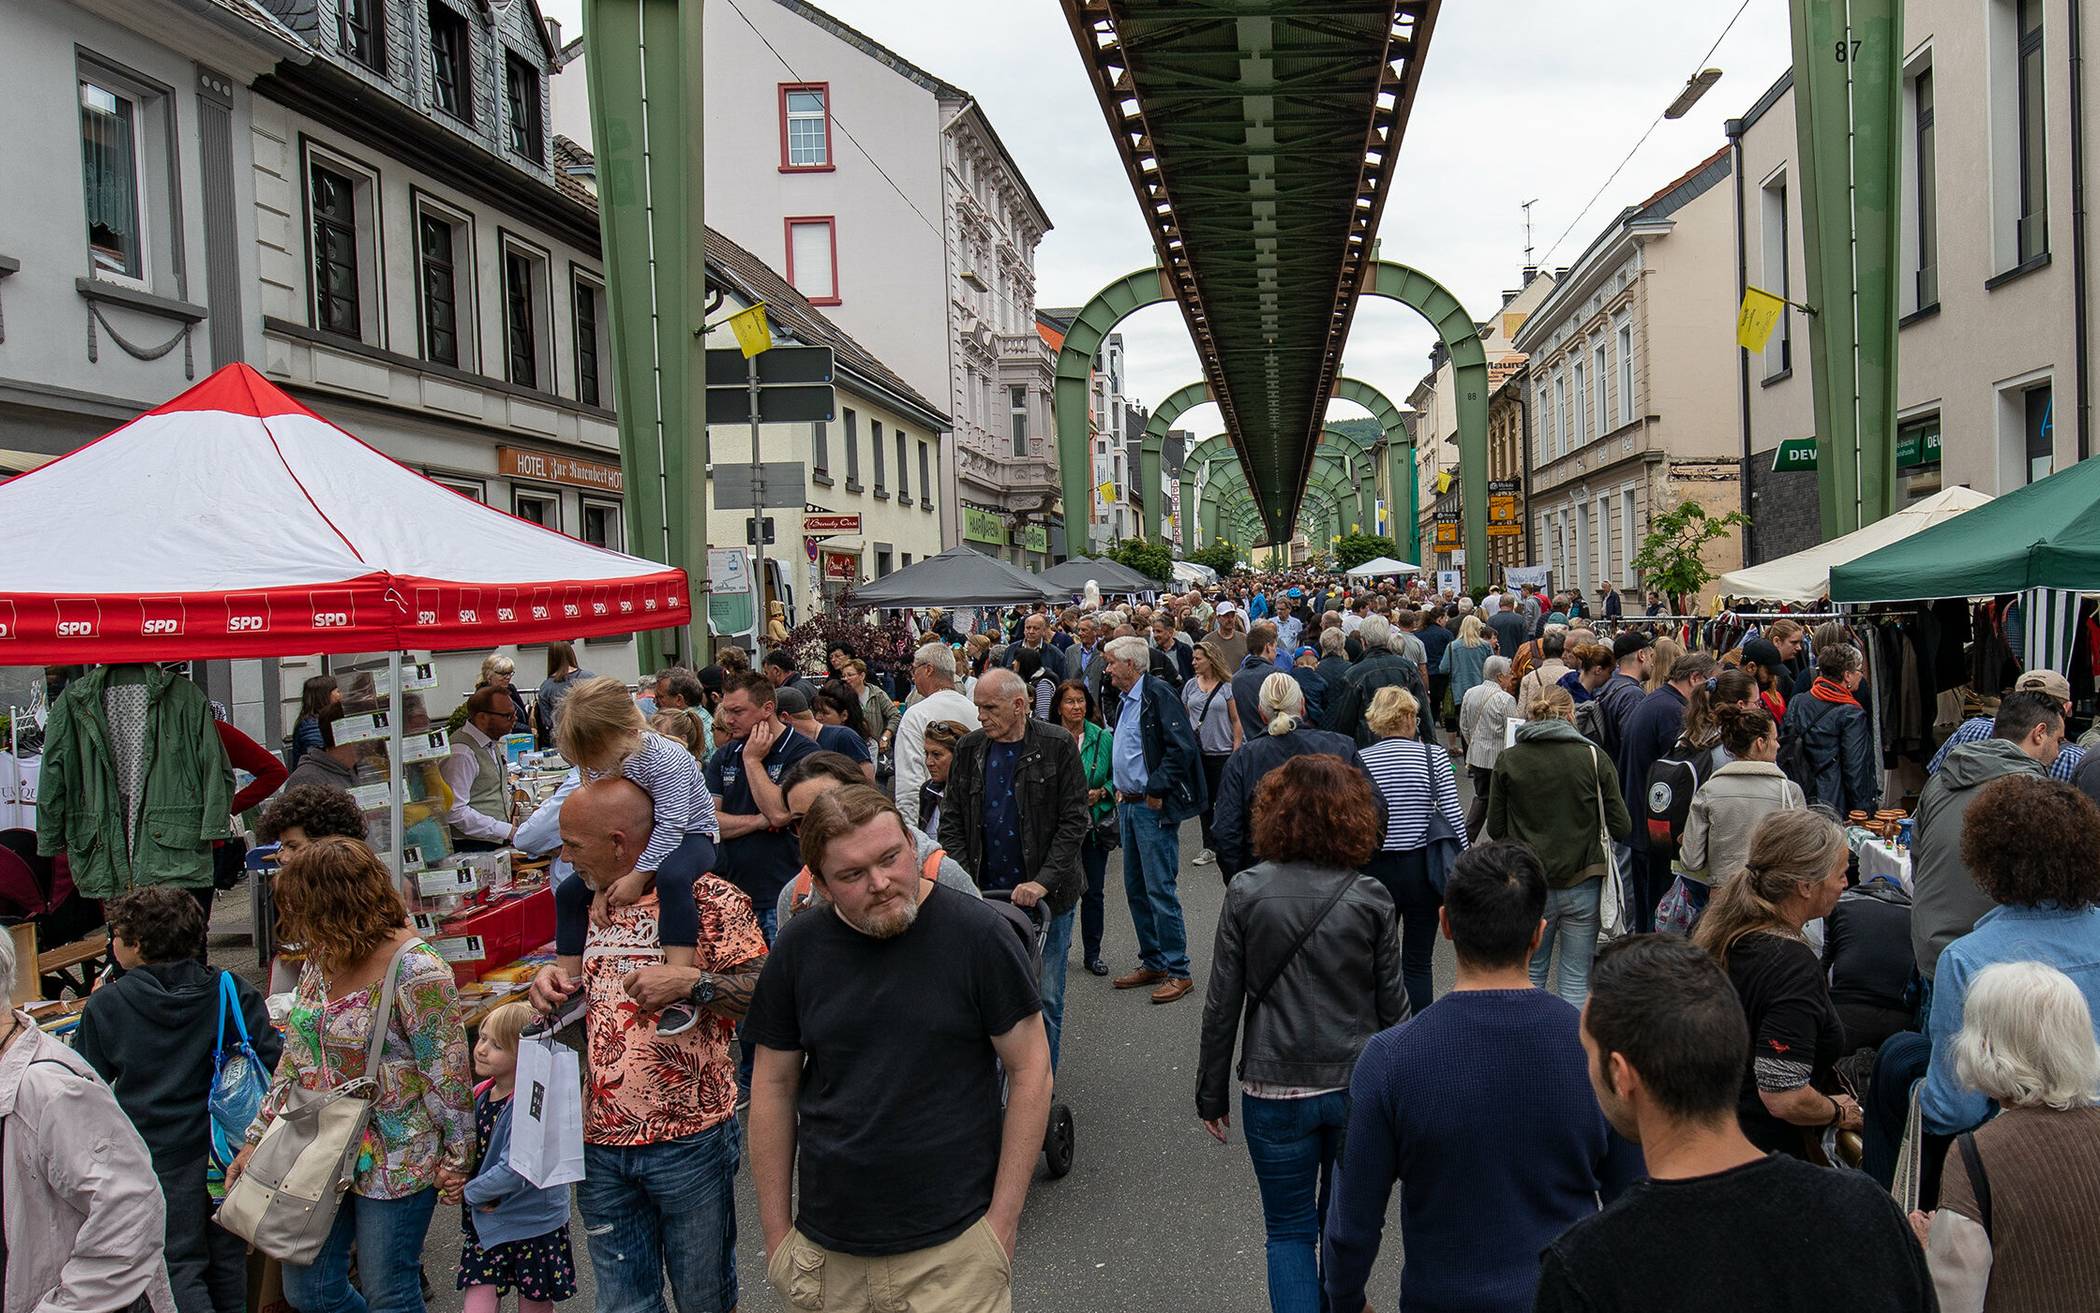   Der Sonnborner Trödelmarkt findet traditionell unter der Schwebebahn statt.   